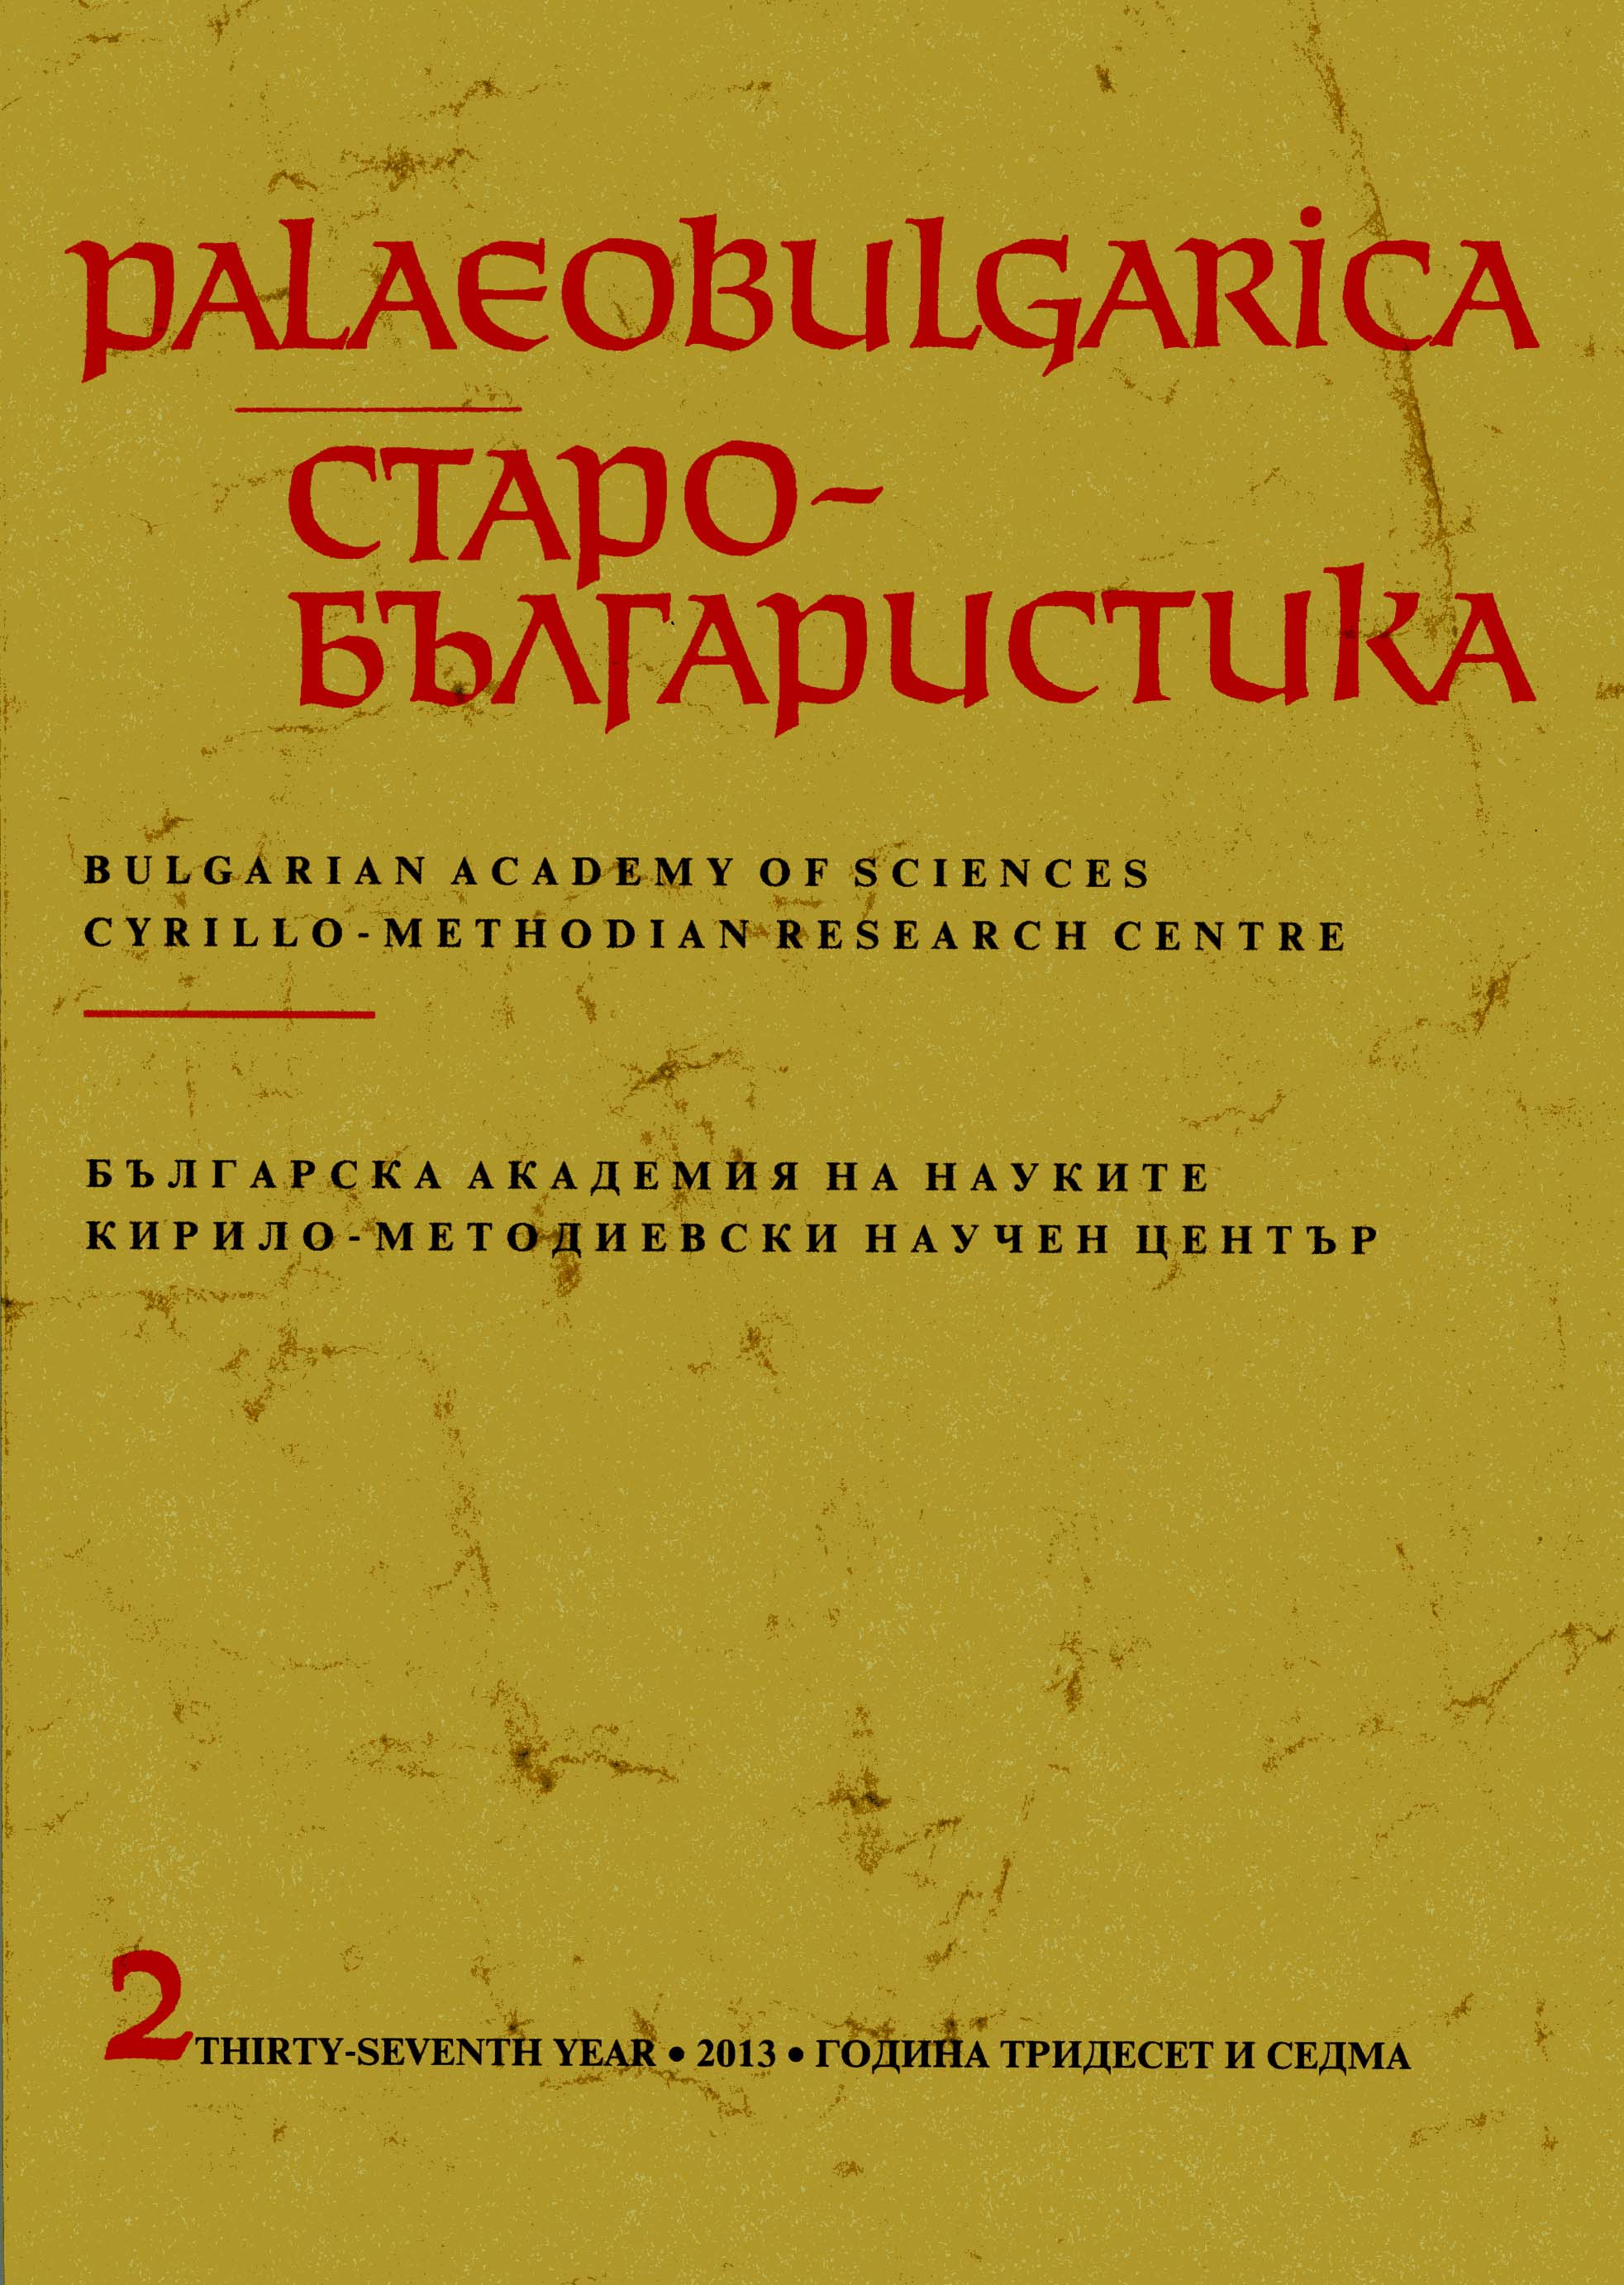 Славянските езици, писменост и книжнина в диахронен и синхронен план